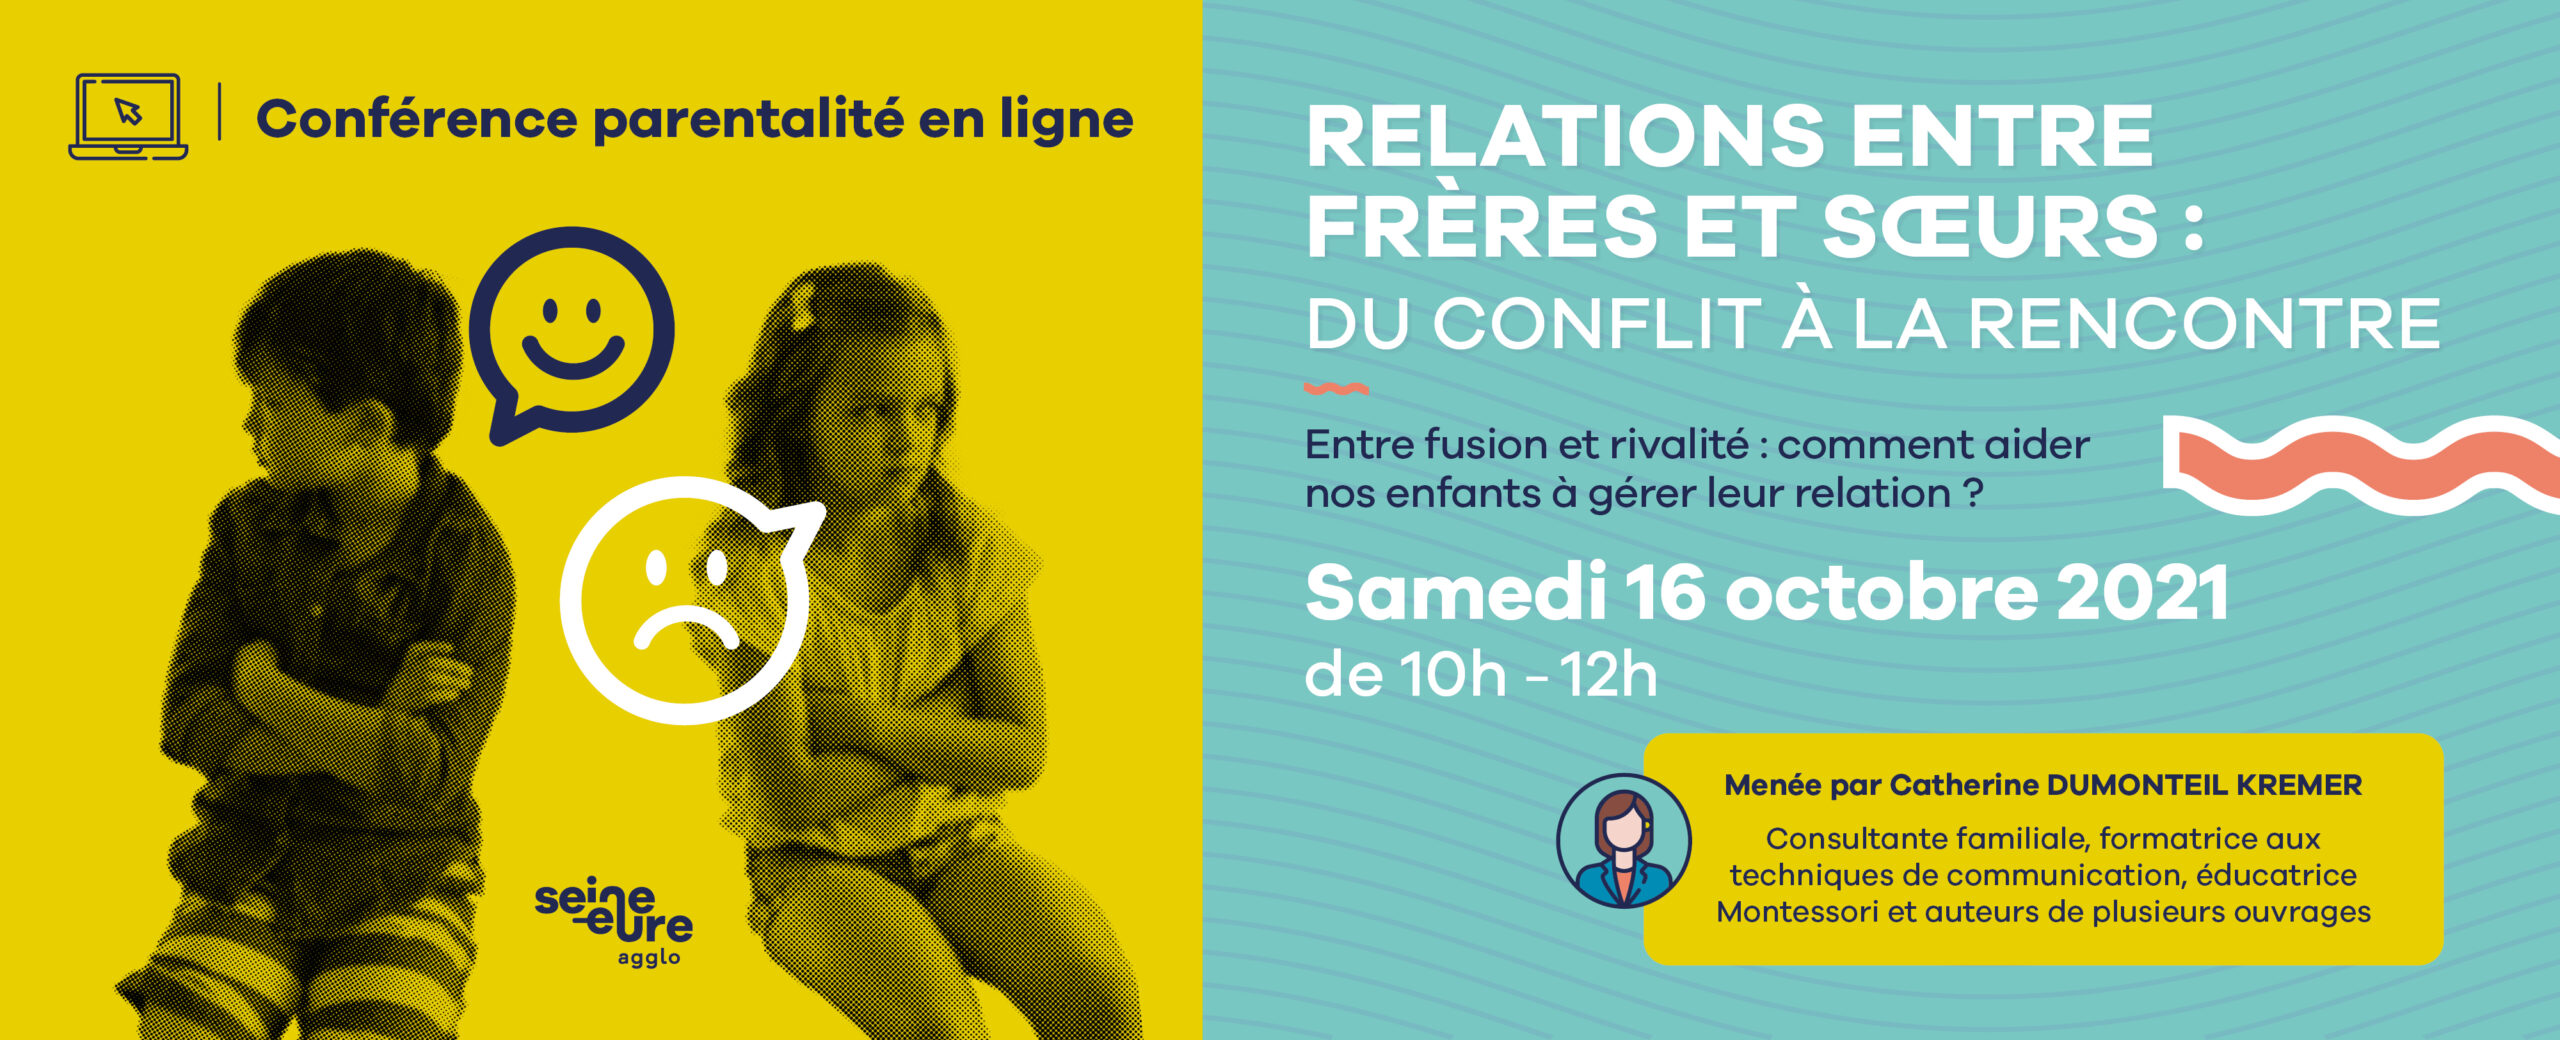 Conférence parentalité : RDV le samedi 16 octobre pour un nouveau webinaire sur le thème des relations fraternelles